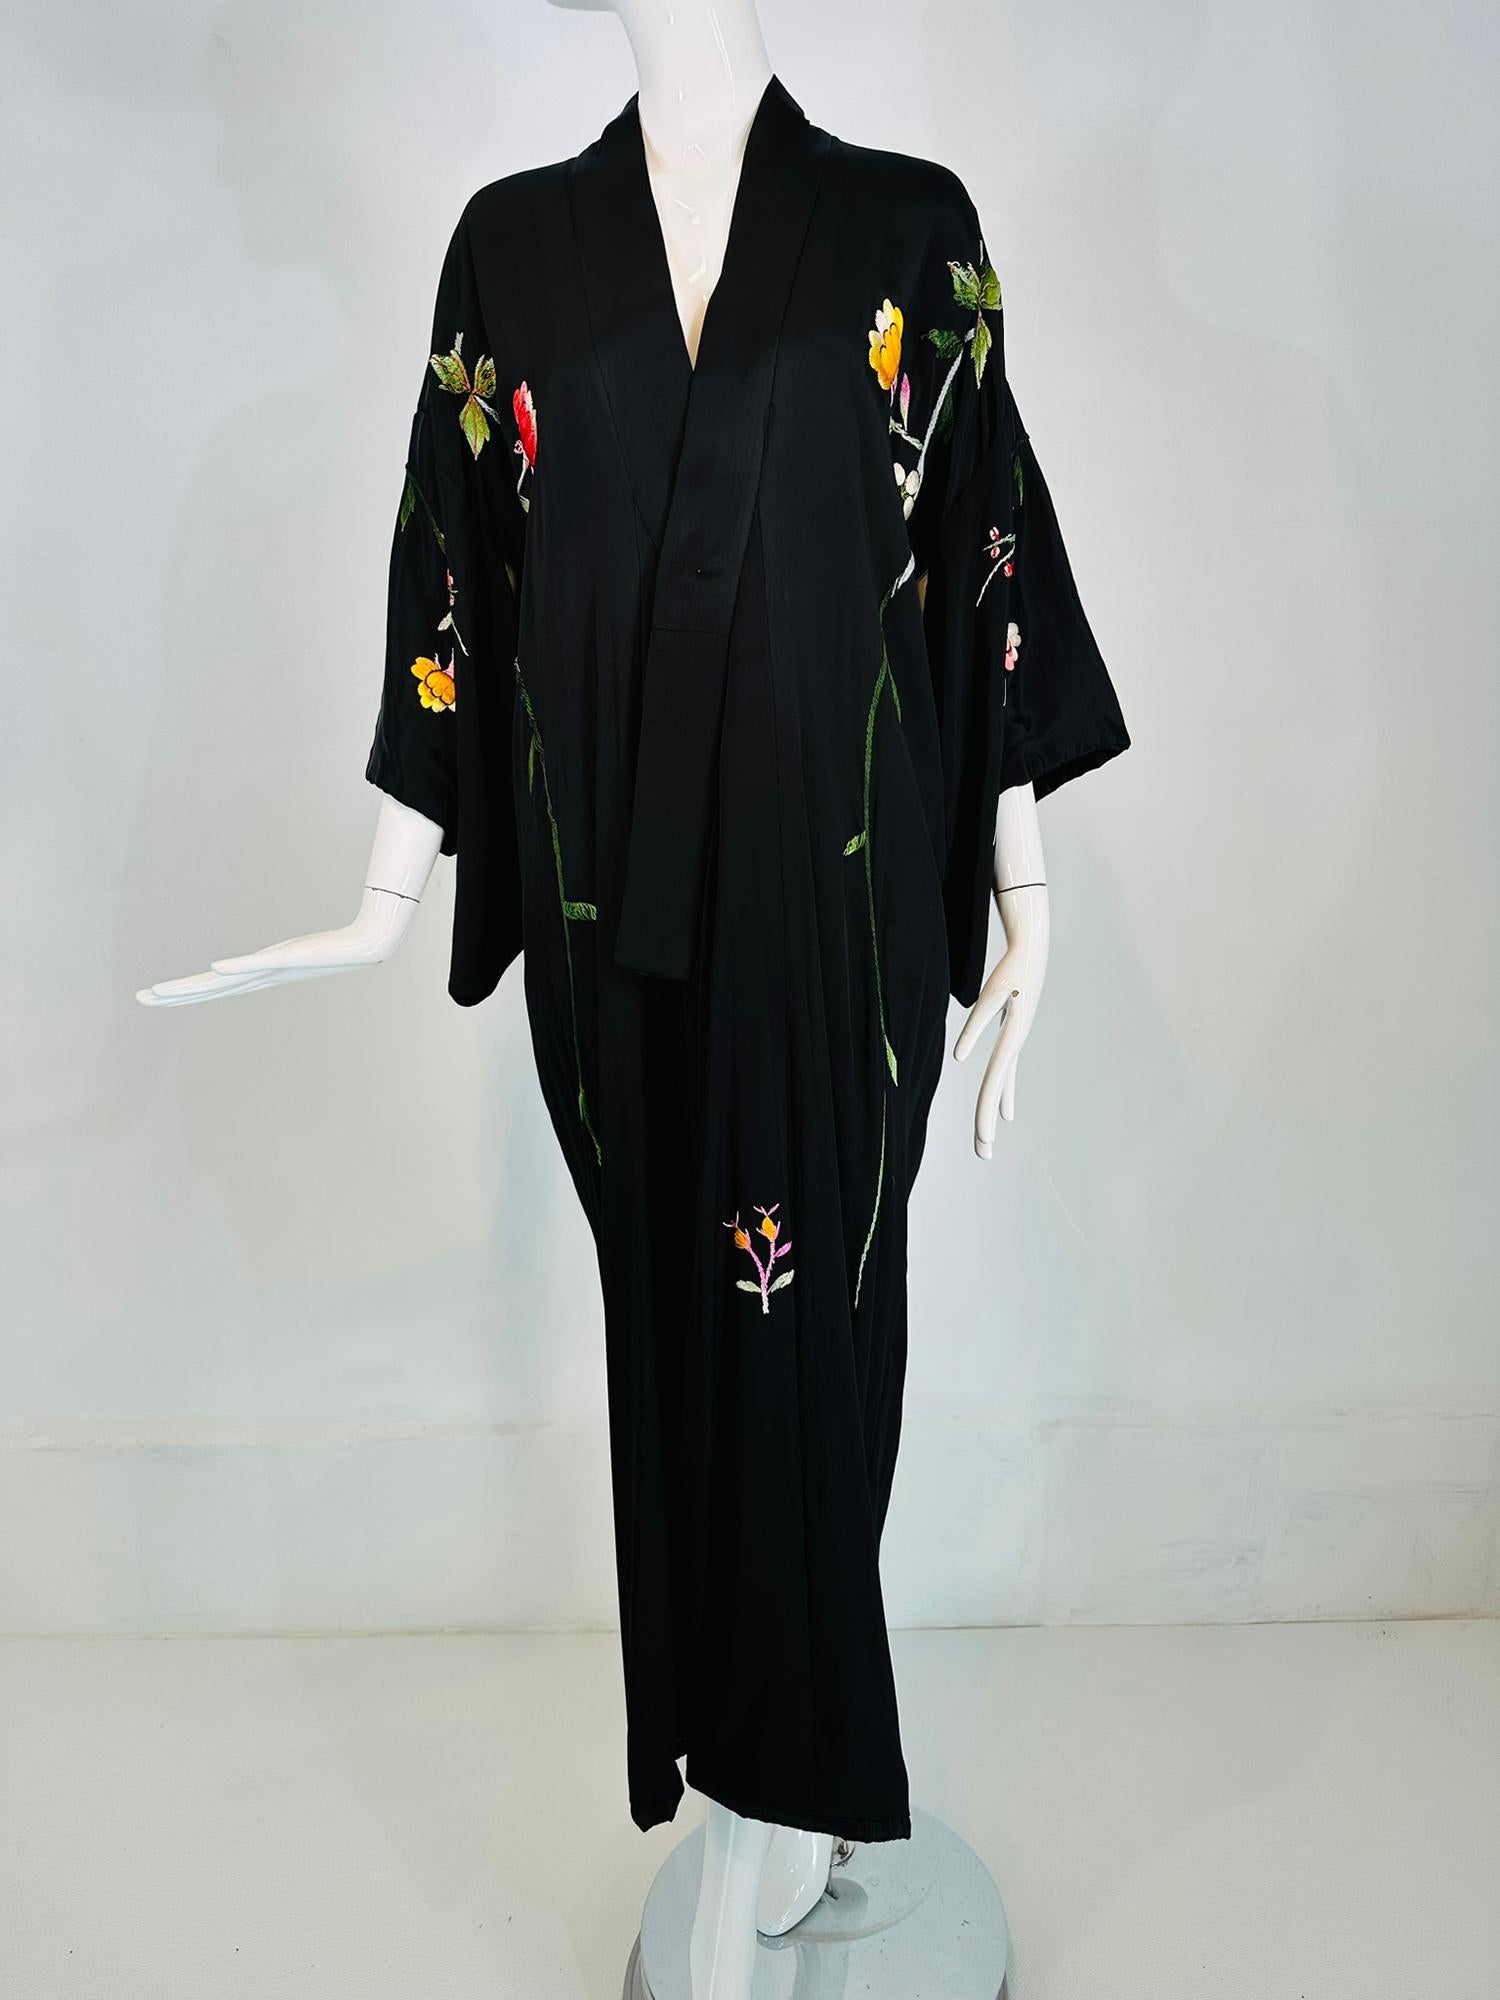 Schwarzes Kimono-Gewand aus Viskose mit Blumenstickerei aus den 1930/40er Jahren. Mit schwarzem Viskosegewebe gefüttertes Wickelgewand mit Kimono-Ärmeln und gepolsterten Rollsäumen. Das Gewand ist lang. Florale Stickerei auf der Vorderseite und an